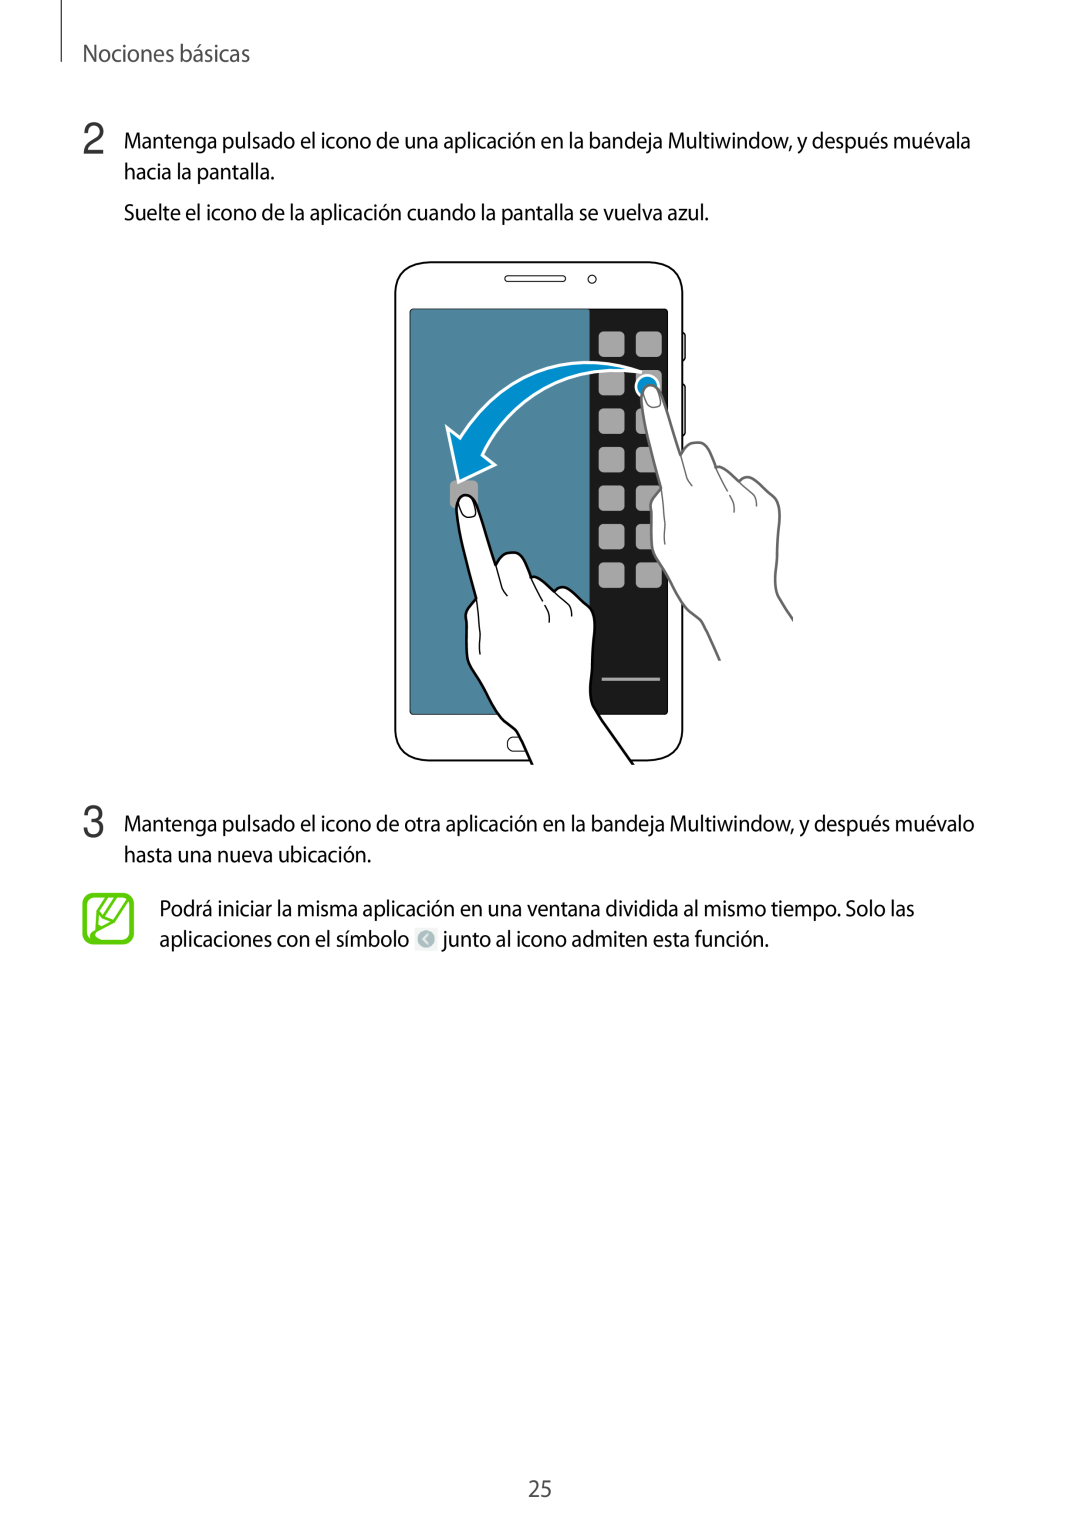 Samsung SM-T3150ZWAATL manual Nociones básicas, Suelte el icono de la aplicación cuando la pantalla se vuelva azul 